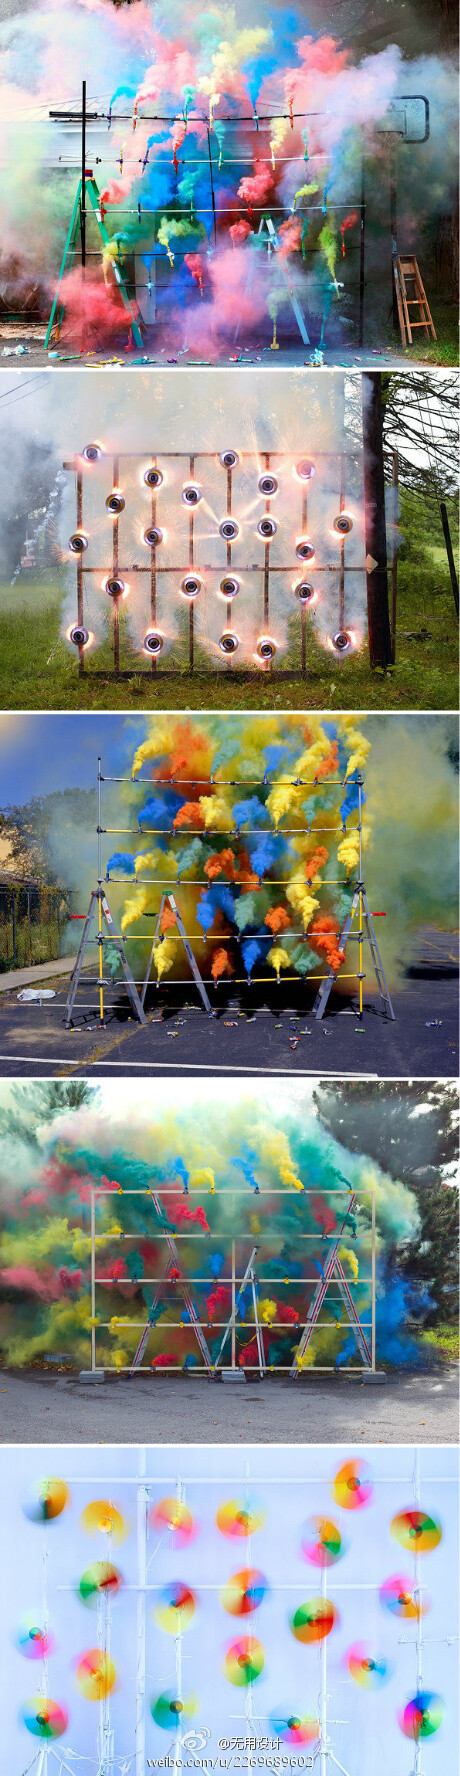 瑞士的视觉艺术家Olaf Breuning日前在不同的街口摆放了彩色喷雾的装置，用斑斓的颜色表达自己的艺术观念。